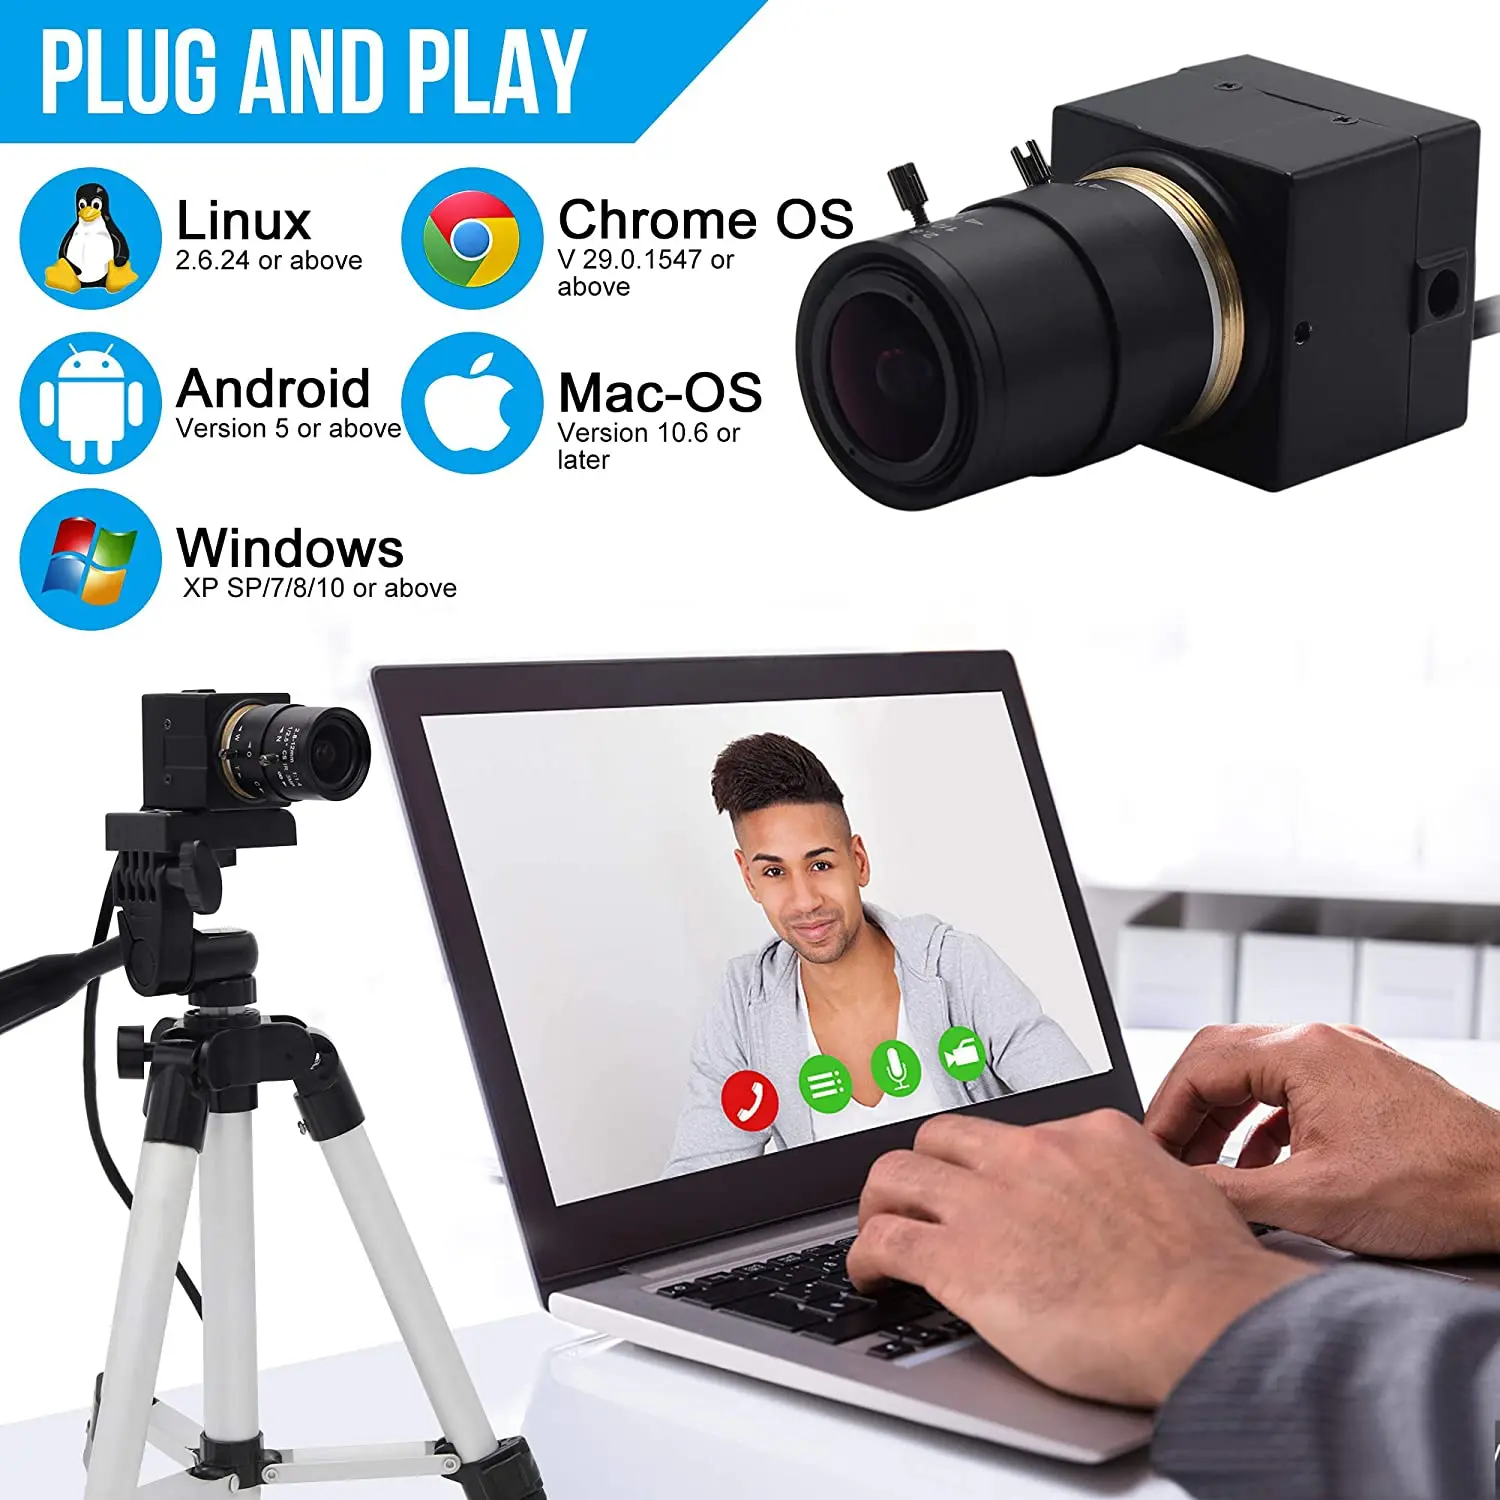 ELP 1.3MP С Низкой Освещенностью 960P USB-Камера OTG С Переменным Фокусным Расстоянием 2.8-12mm Объектив 1280X960 1/3 Дюйма AR0130 Zoom Веб-Камера с Мини-Корпусом3